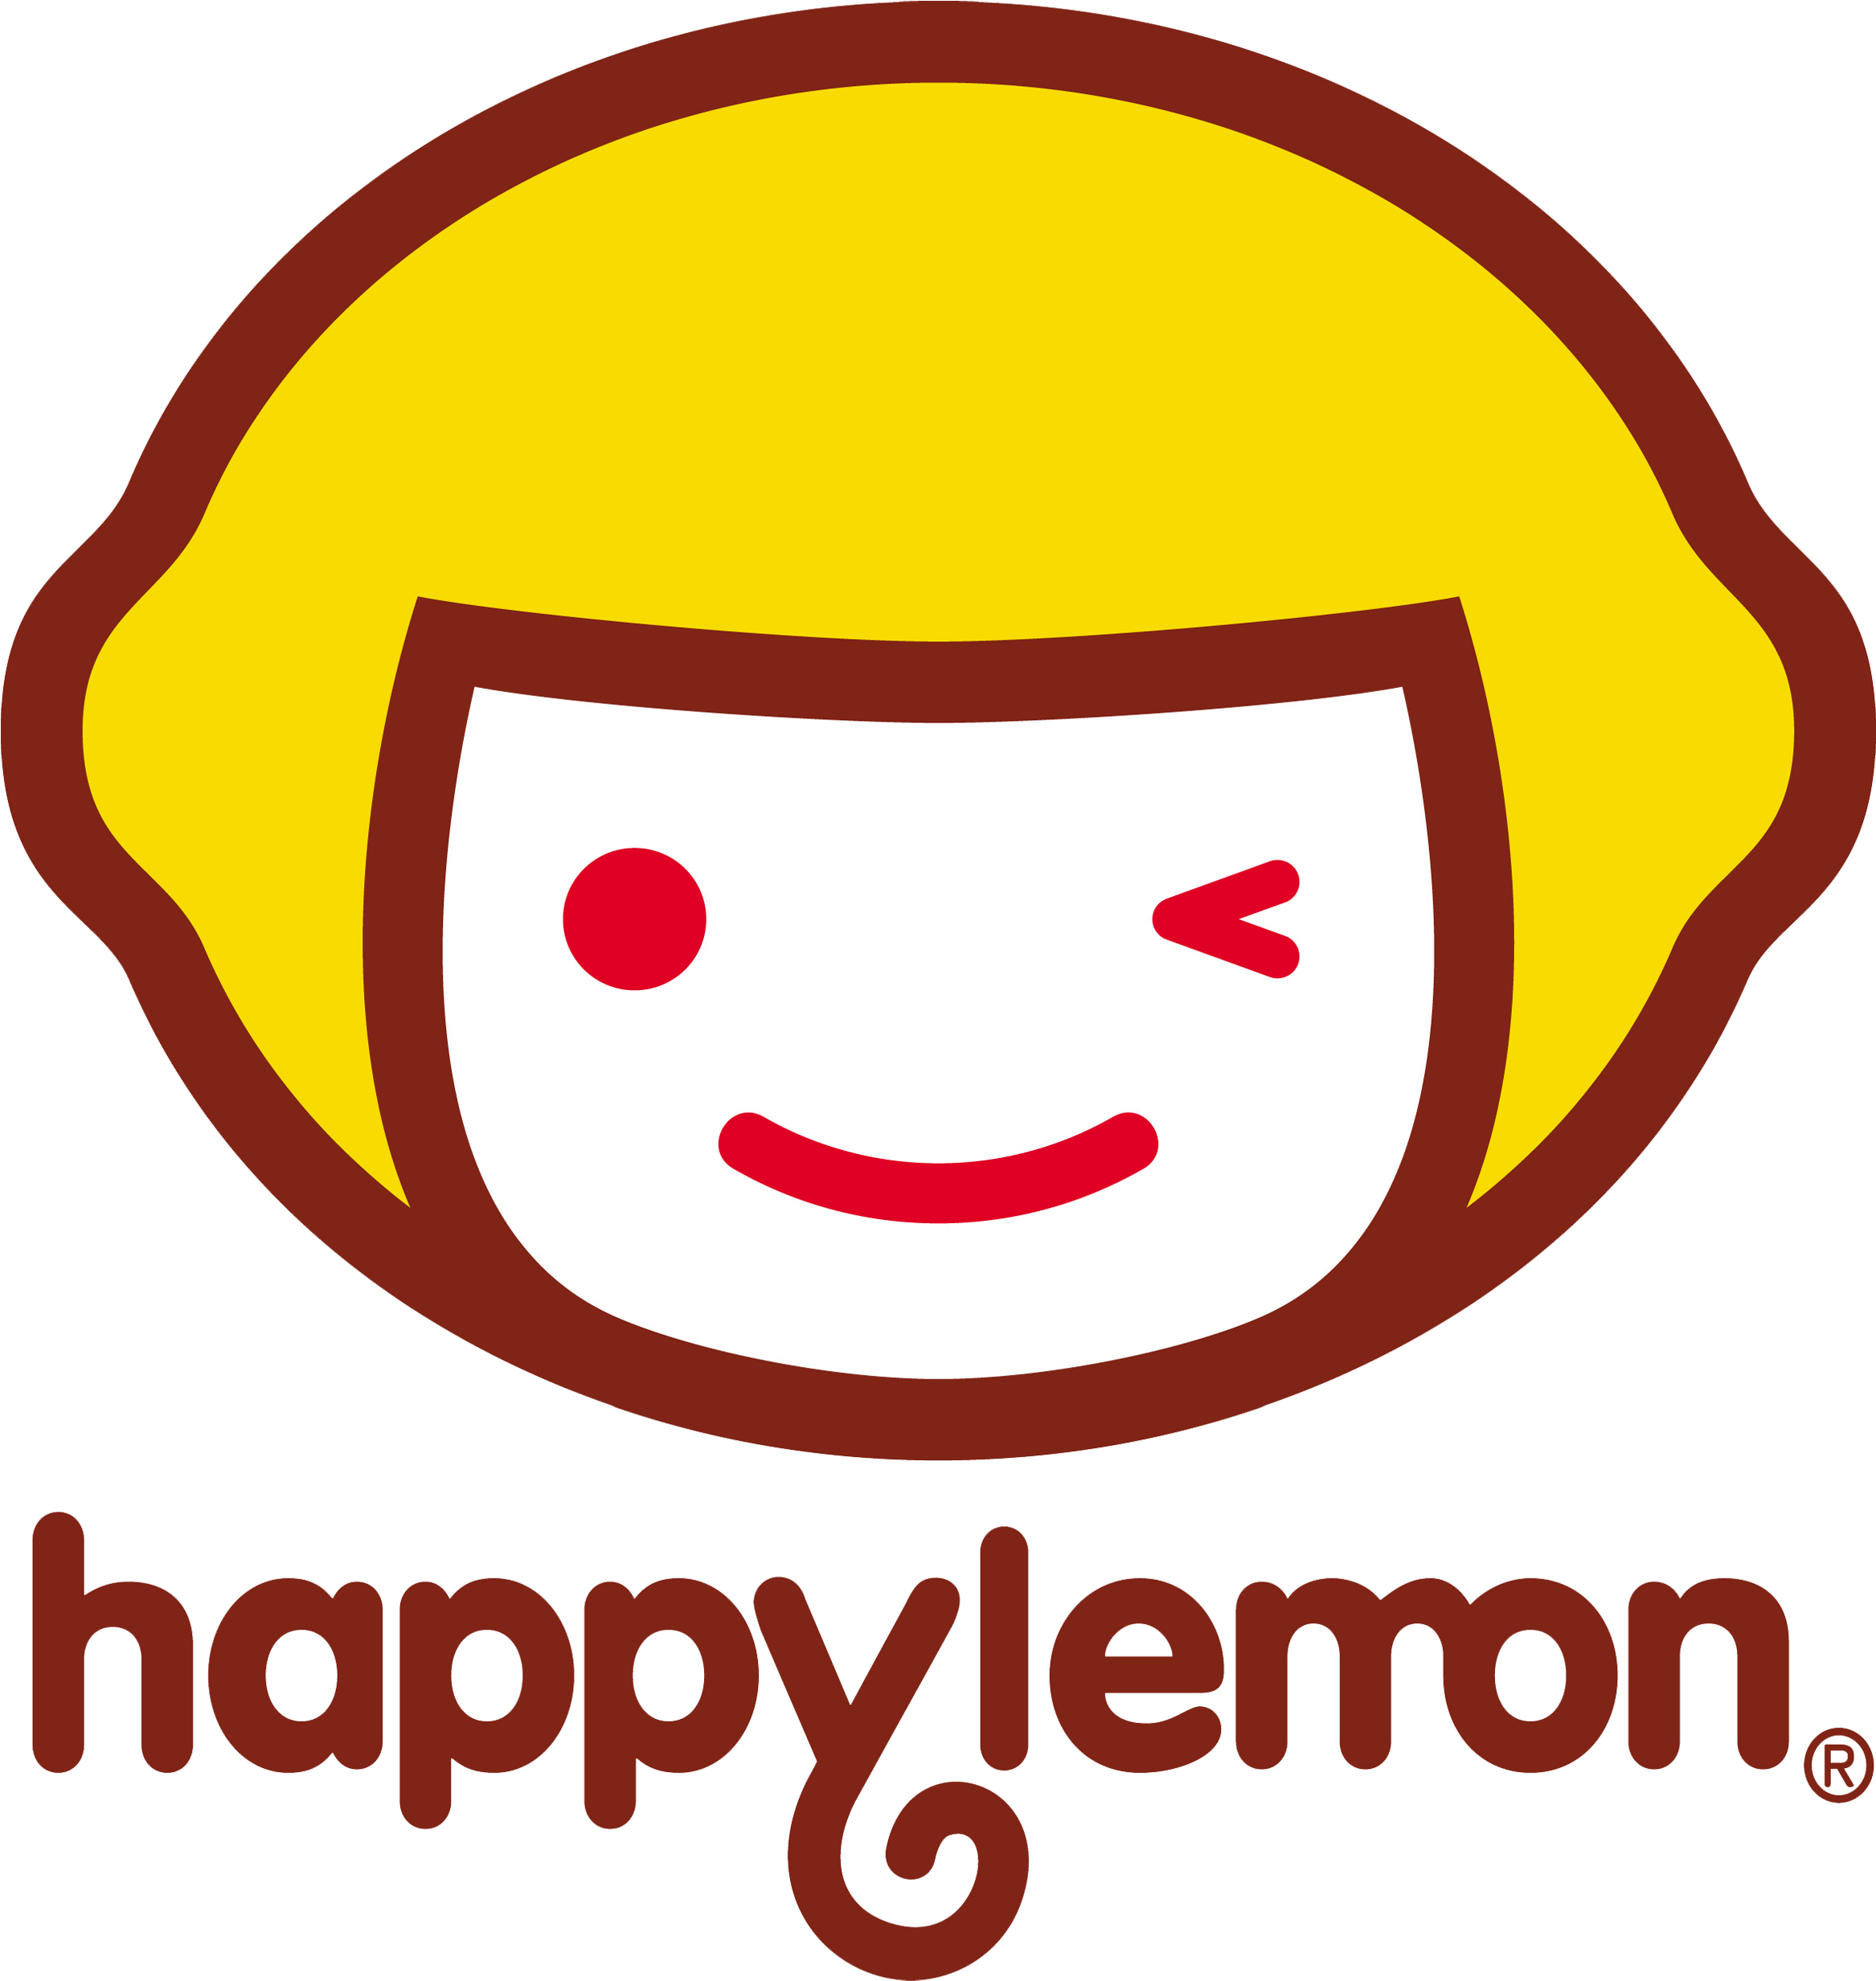 Happy Lemon Group Philippines, Inc - Happy Lemon (2357x2492)